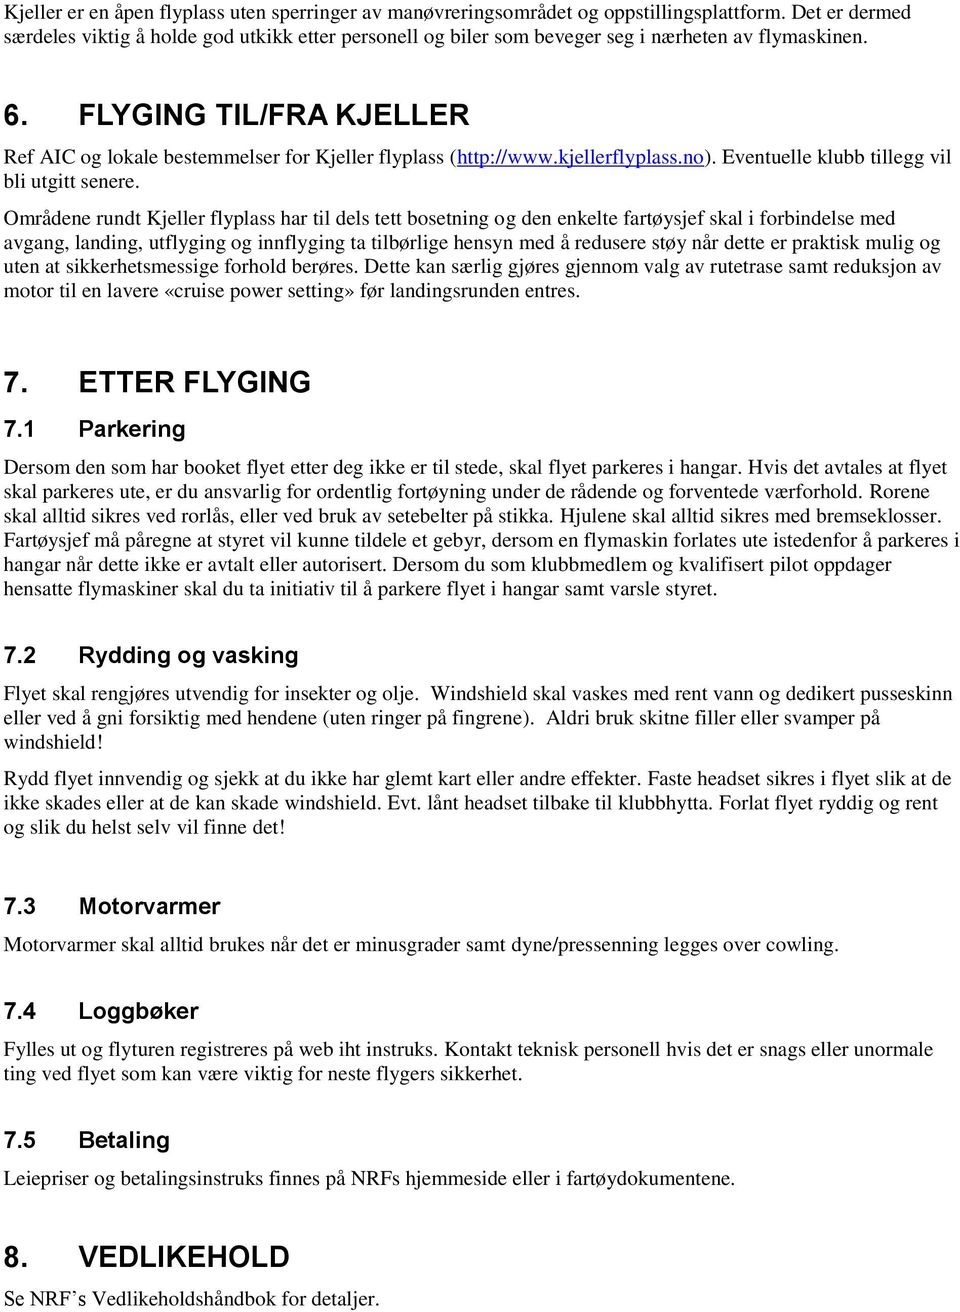 FLYGING TIL/FRA KJELLER Ref AIC og lokale bestemmelser for Kjeller flyplass (http://www.kjellerflyplass.no). Eventuelle klubb tillegg vil bli utgitt senere.